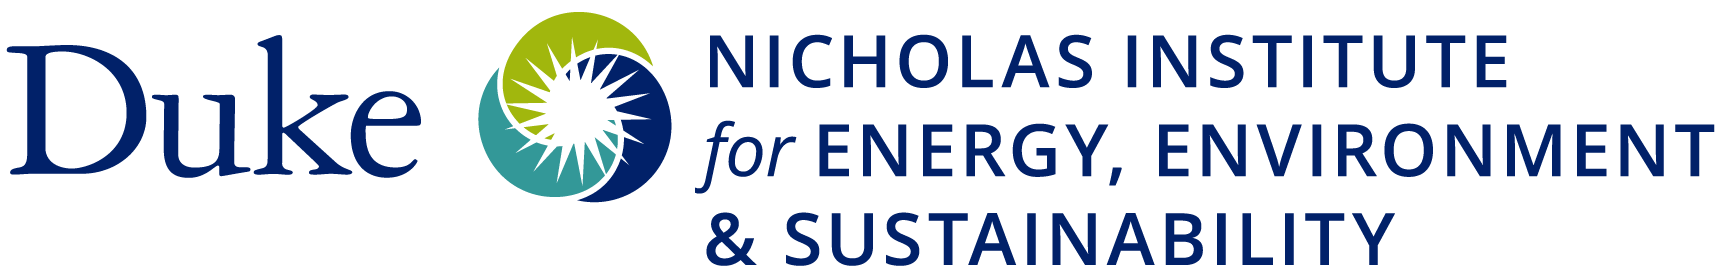 Nicholas Institute logo